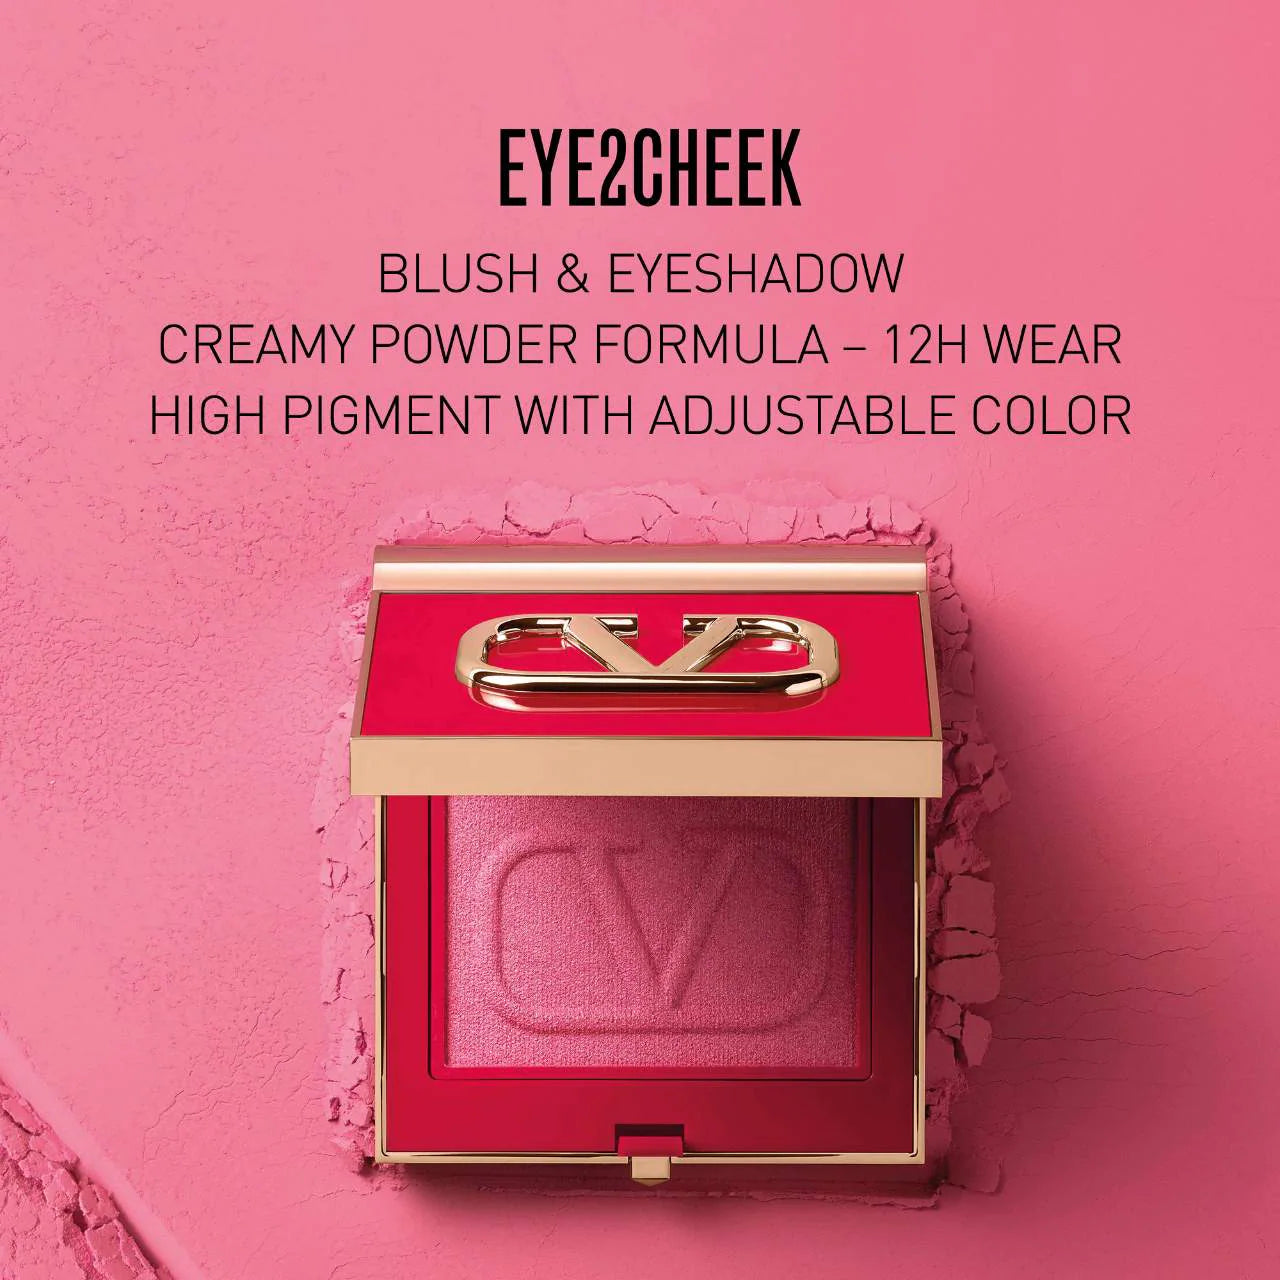 Eye2Cheek Eyeshadow and Blush